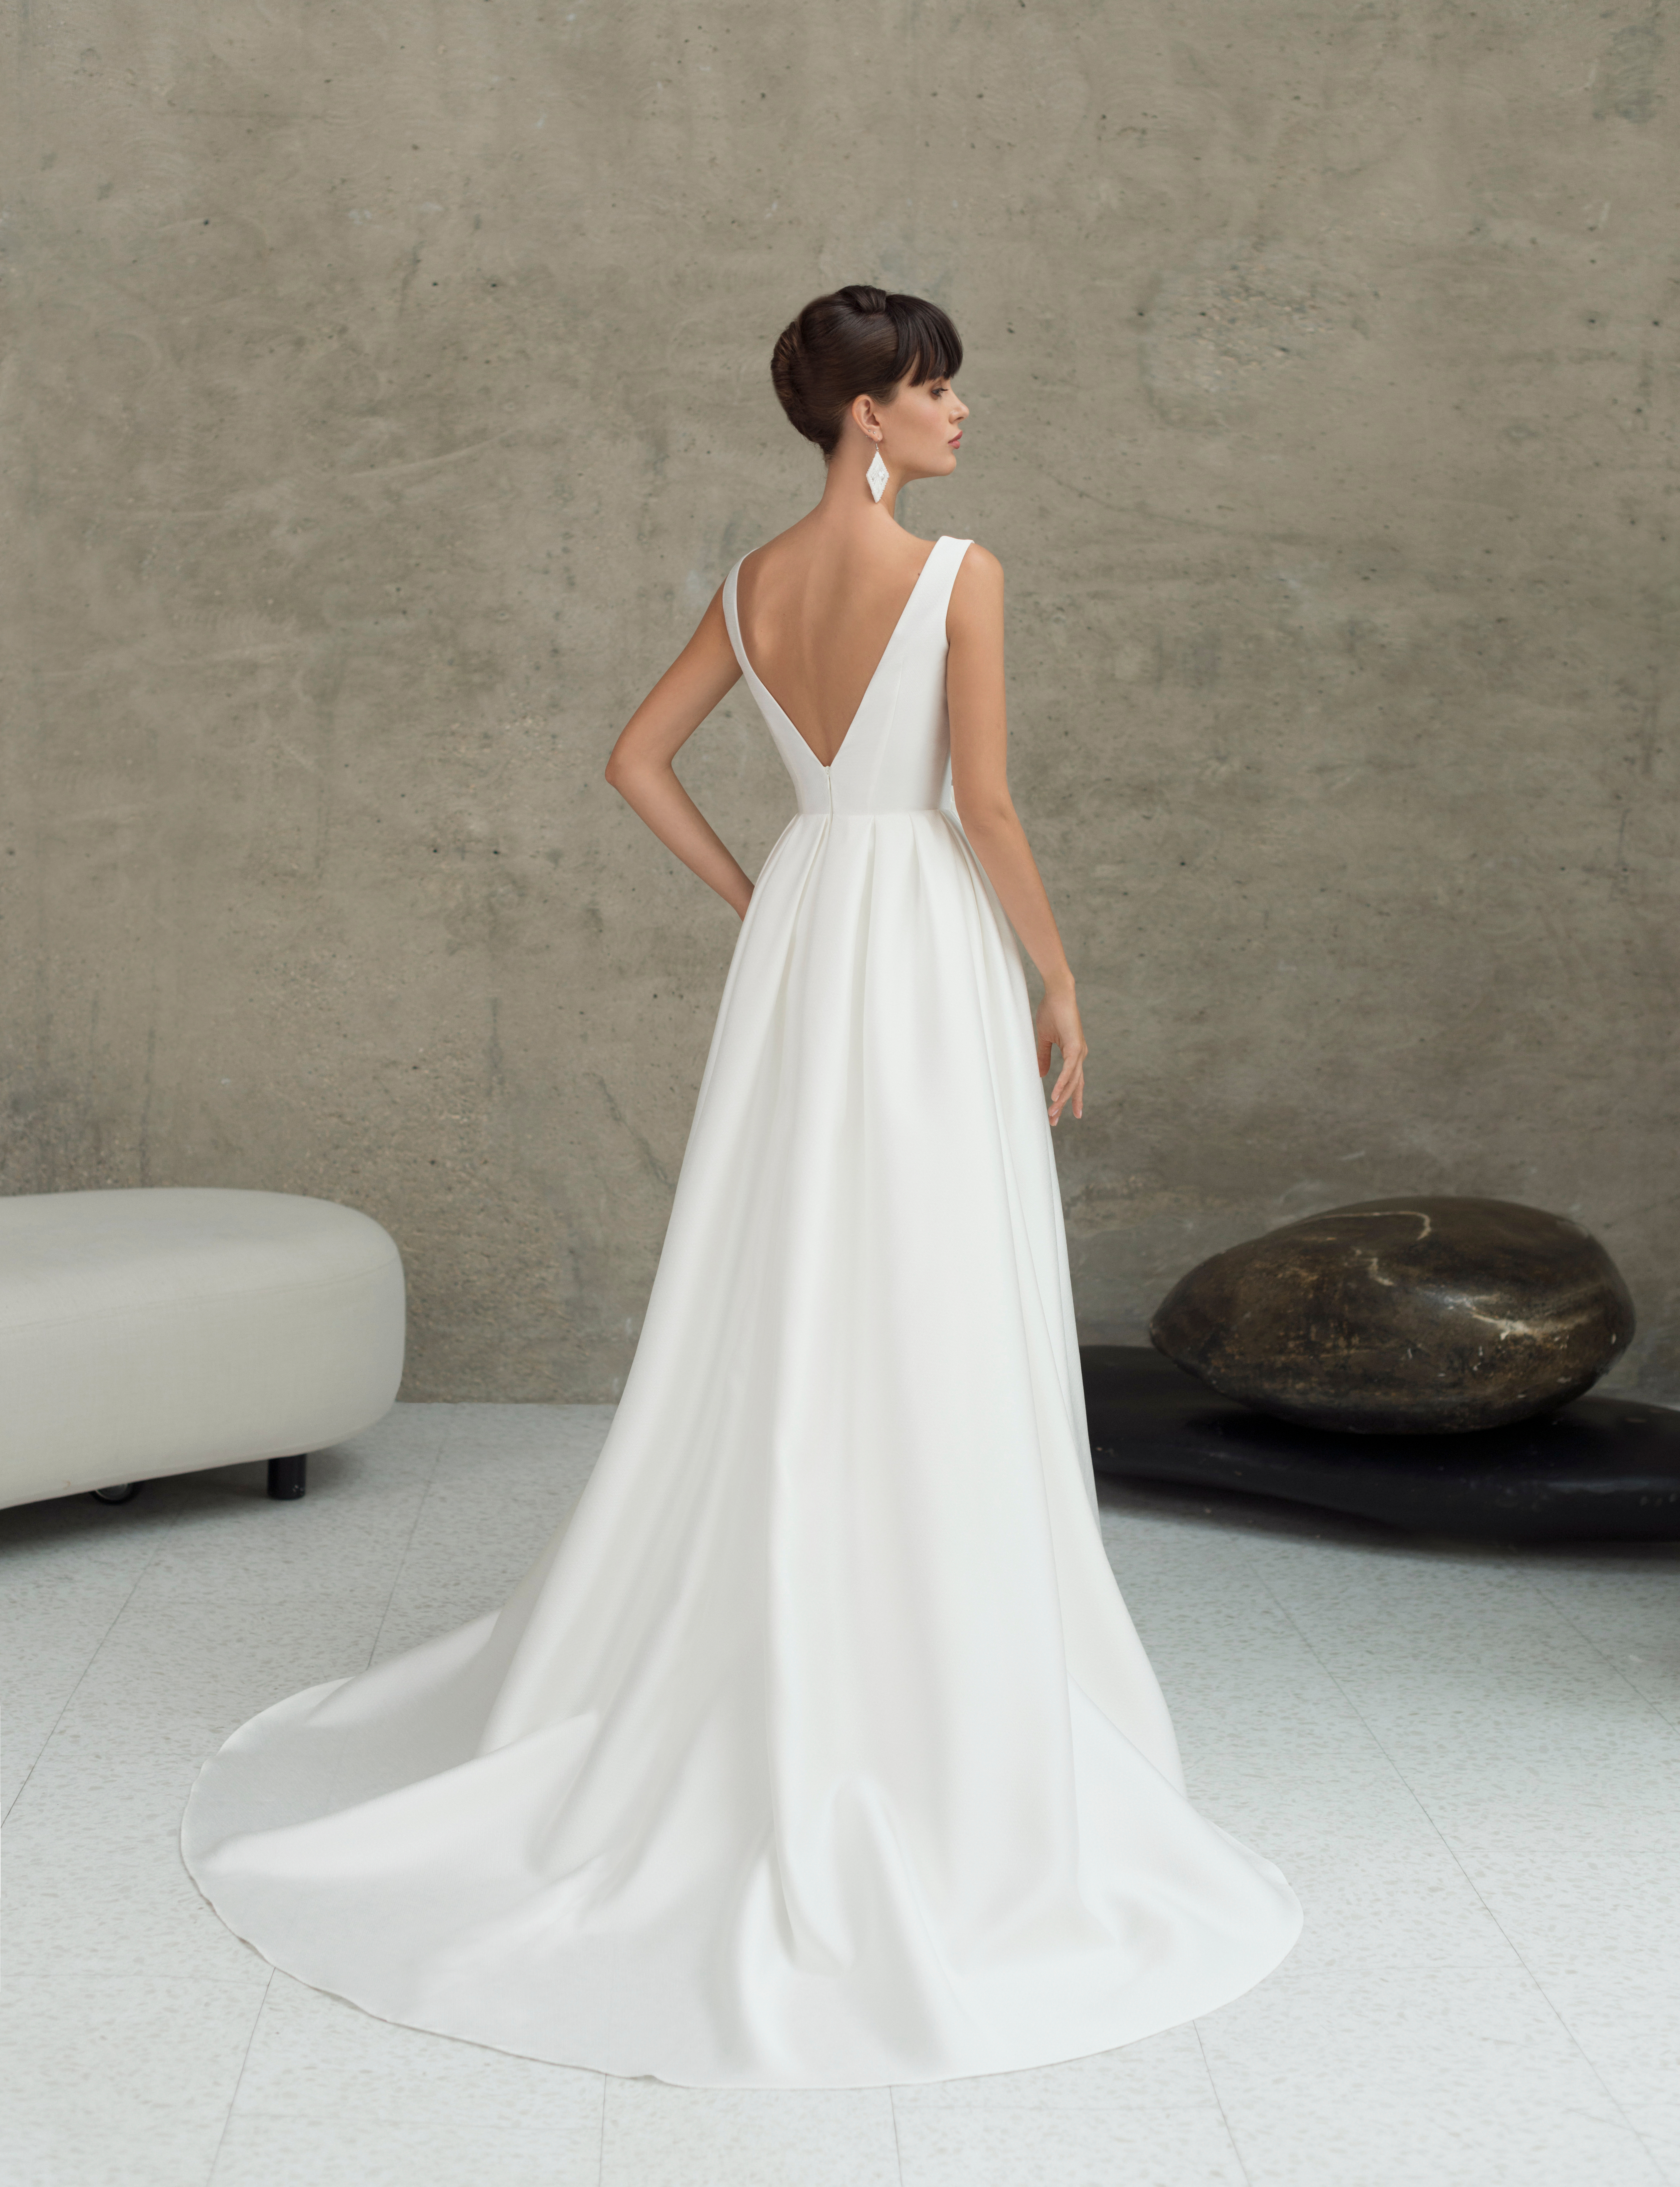 Купить свадебное платье «Лодин» Мэрри Марк из коллекции 2020 года в Мэри Трюфель